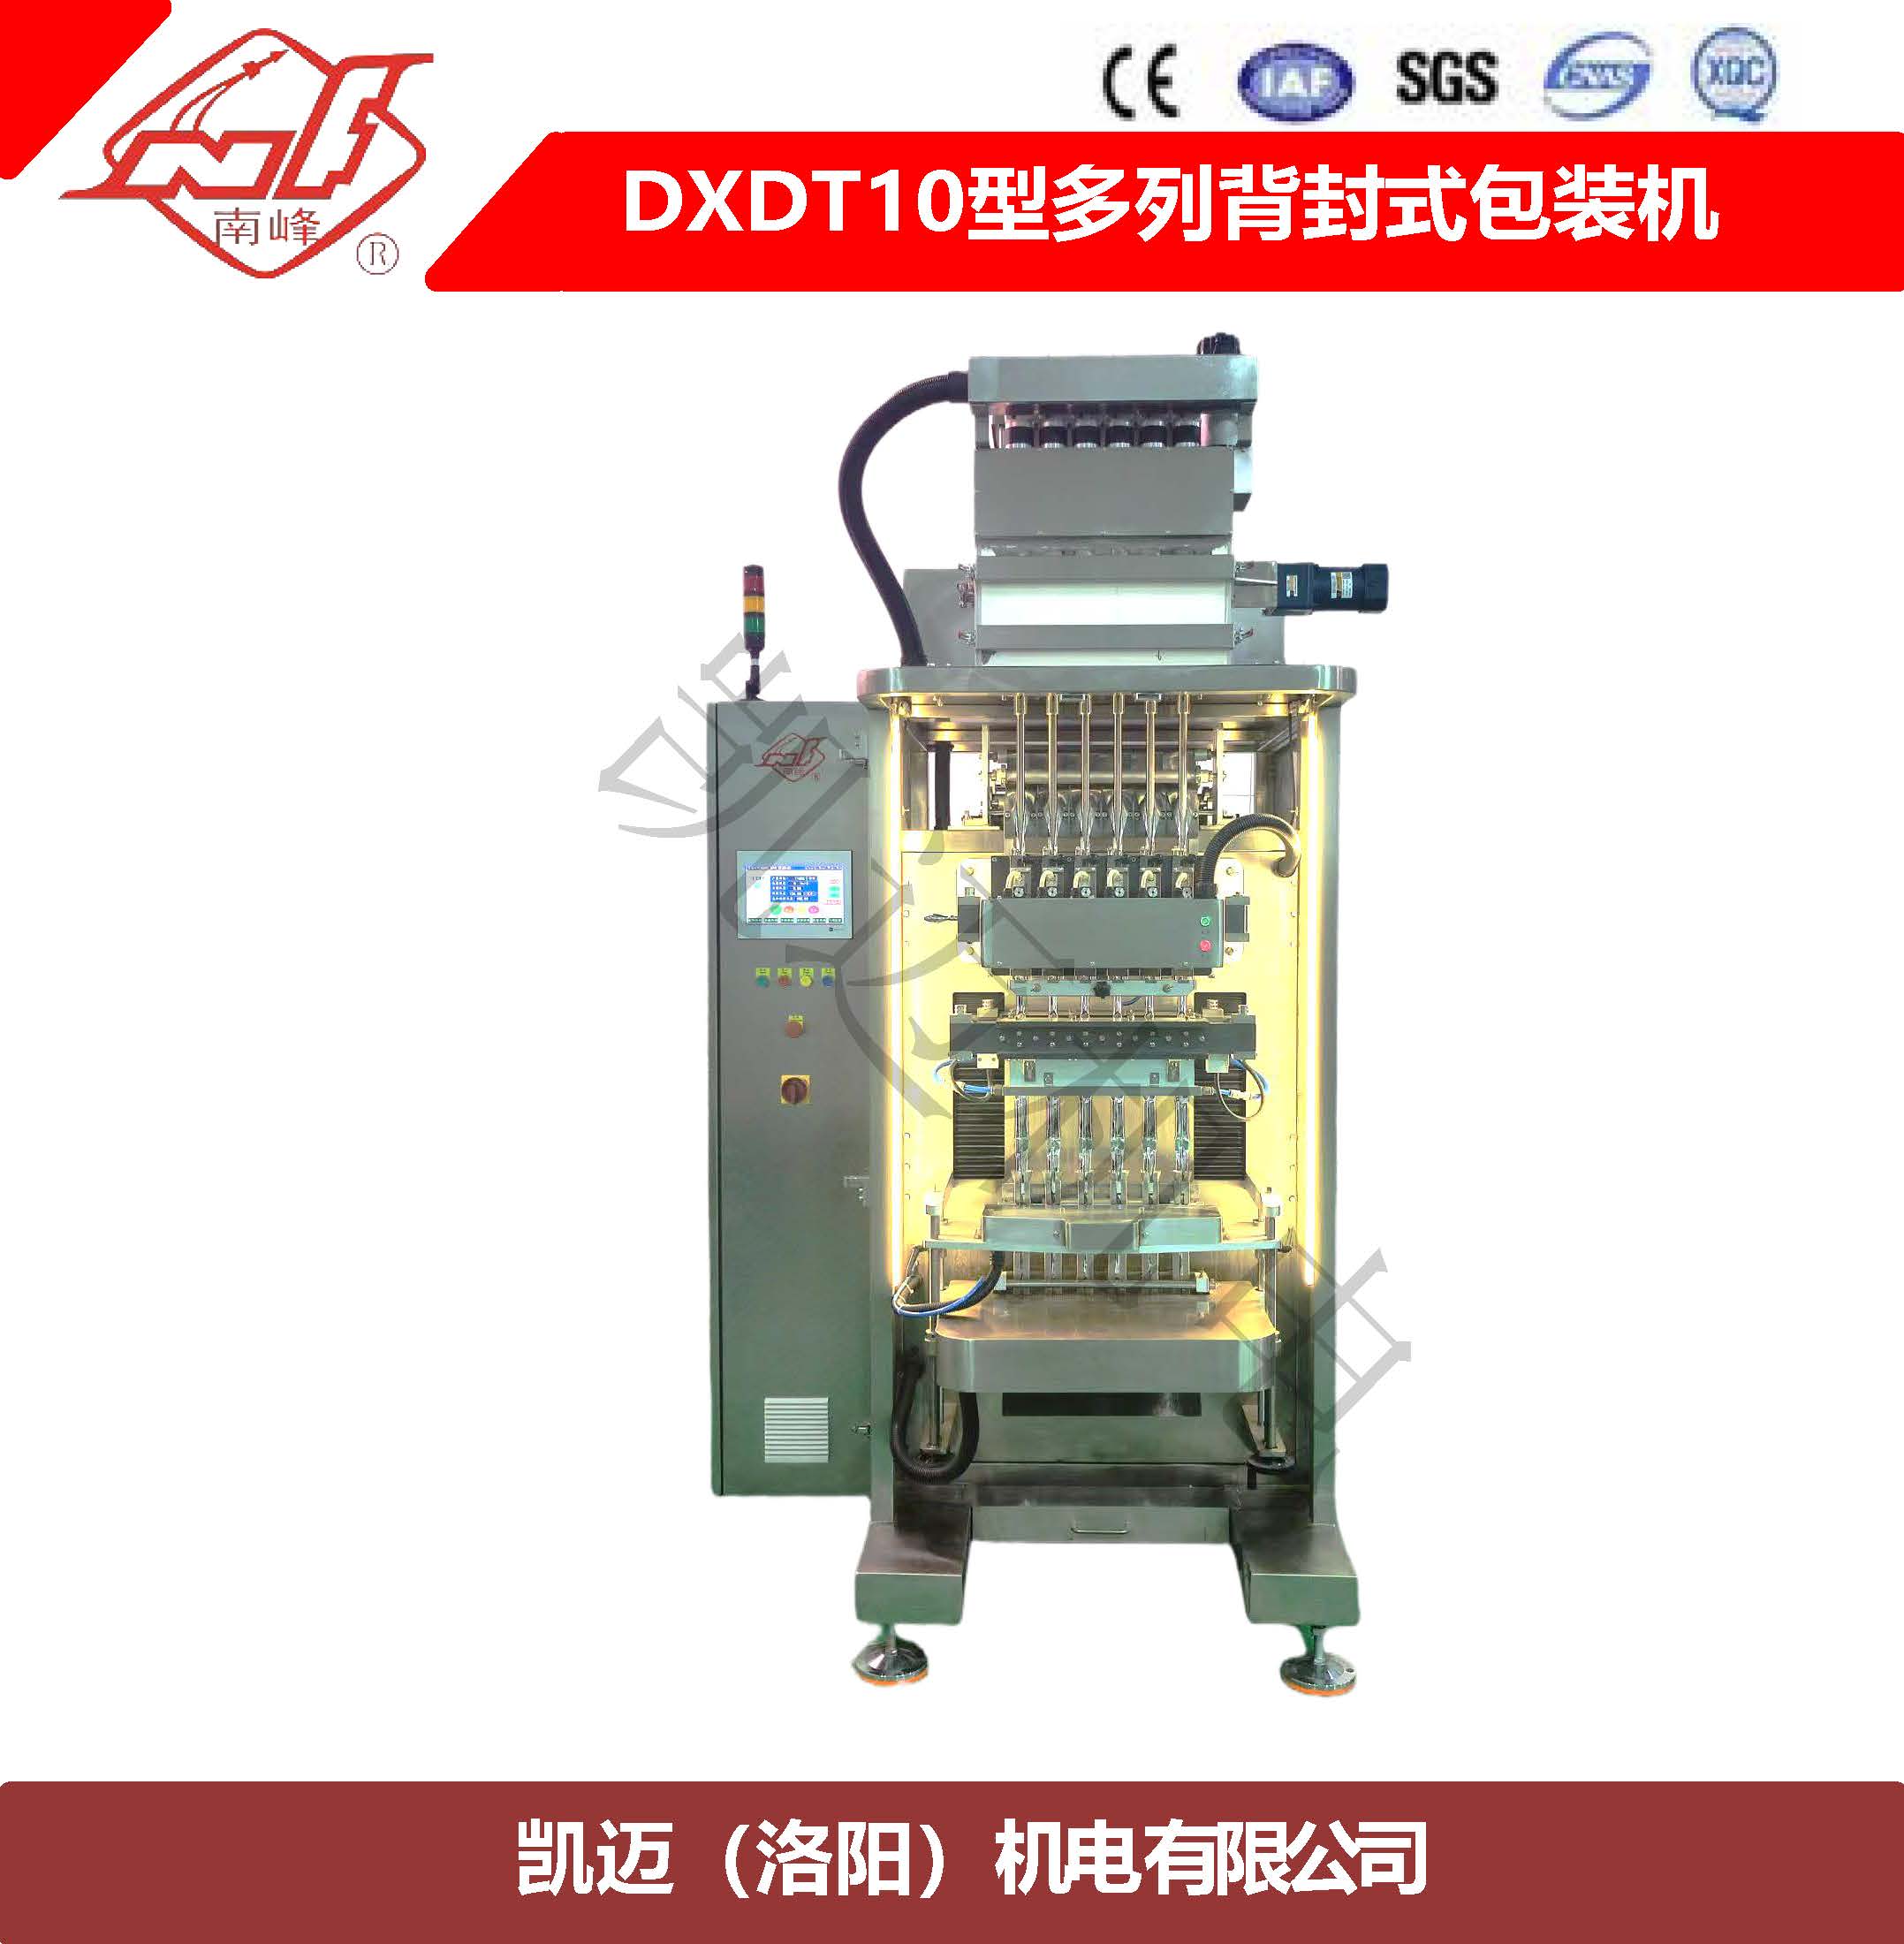 DXDT10型多列背封式包装机